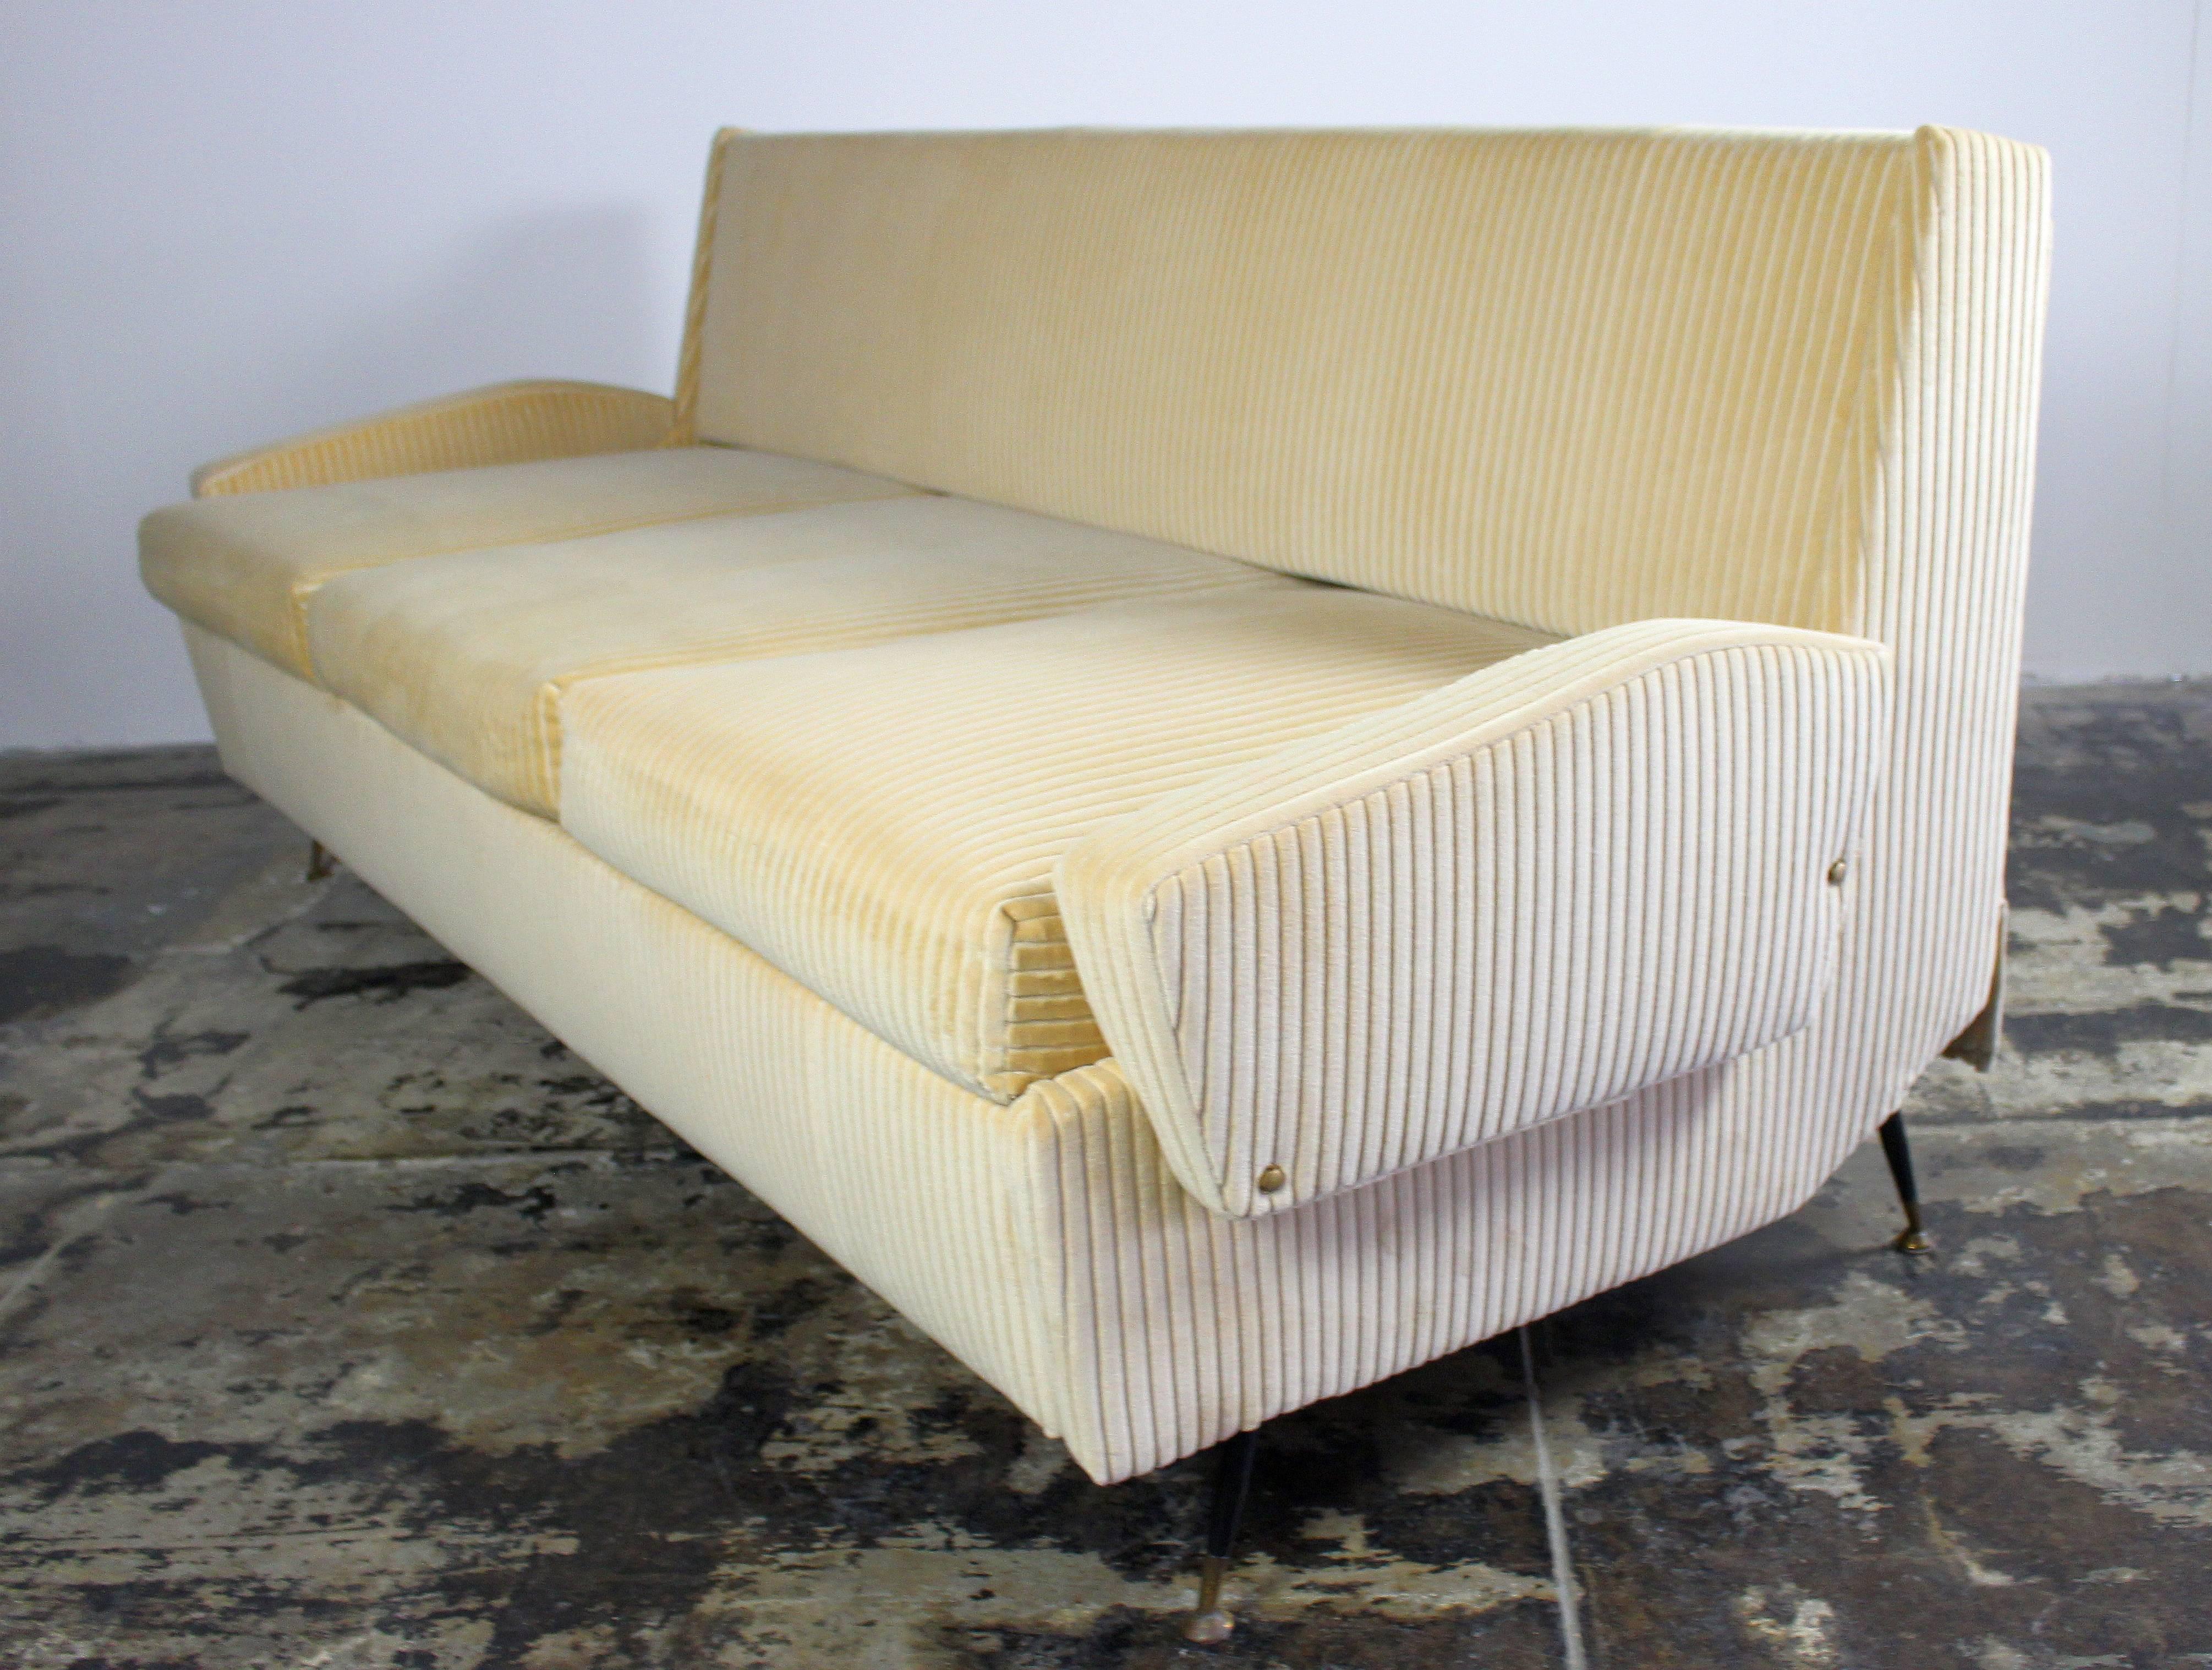 1950er Jahre original italienisches Sofa renoviert und neu gepolstert mit dem Panna Cotta Cord Baumwollsamt, und neuen Schaum. Das Sofa und das Bett sind sehr bequem, Messing und Metall.
bei einer ausgezogenen Bettlänge von 80 Zoll und einer Tiefe